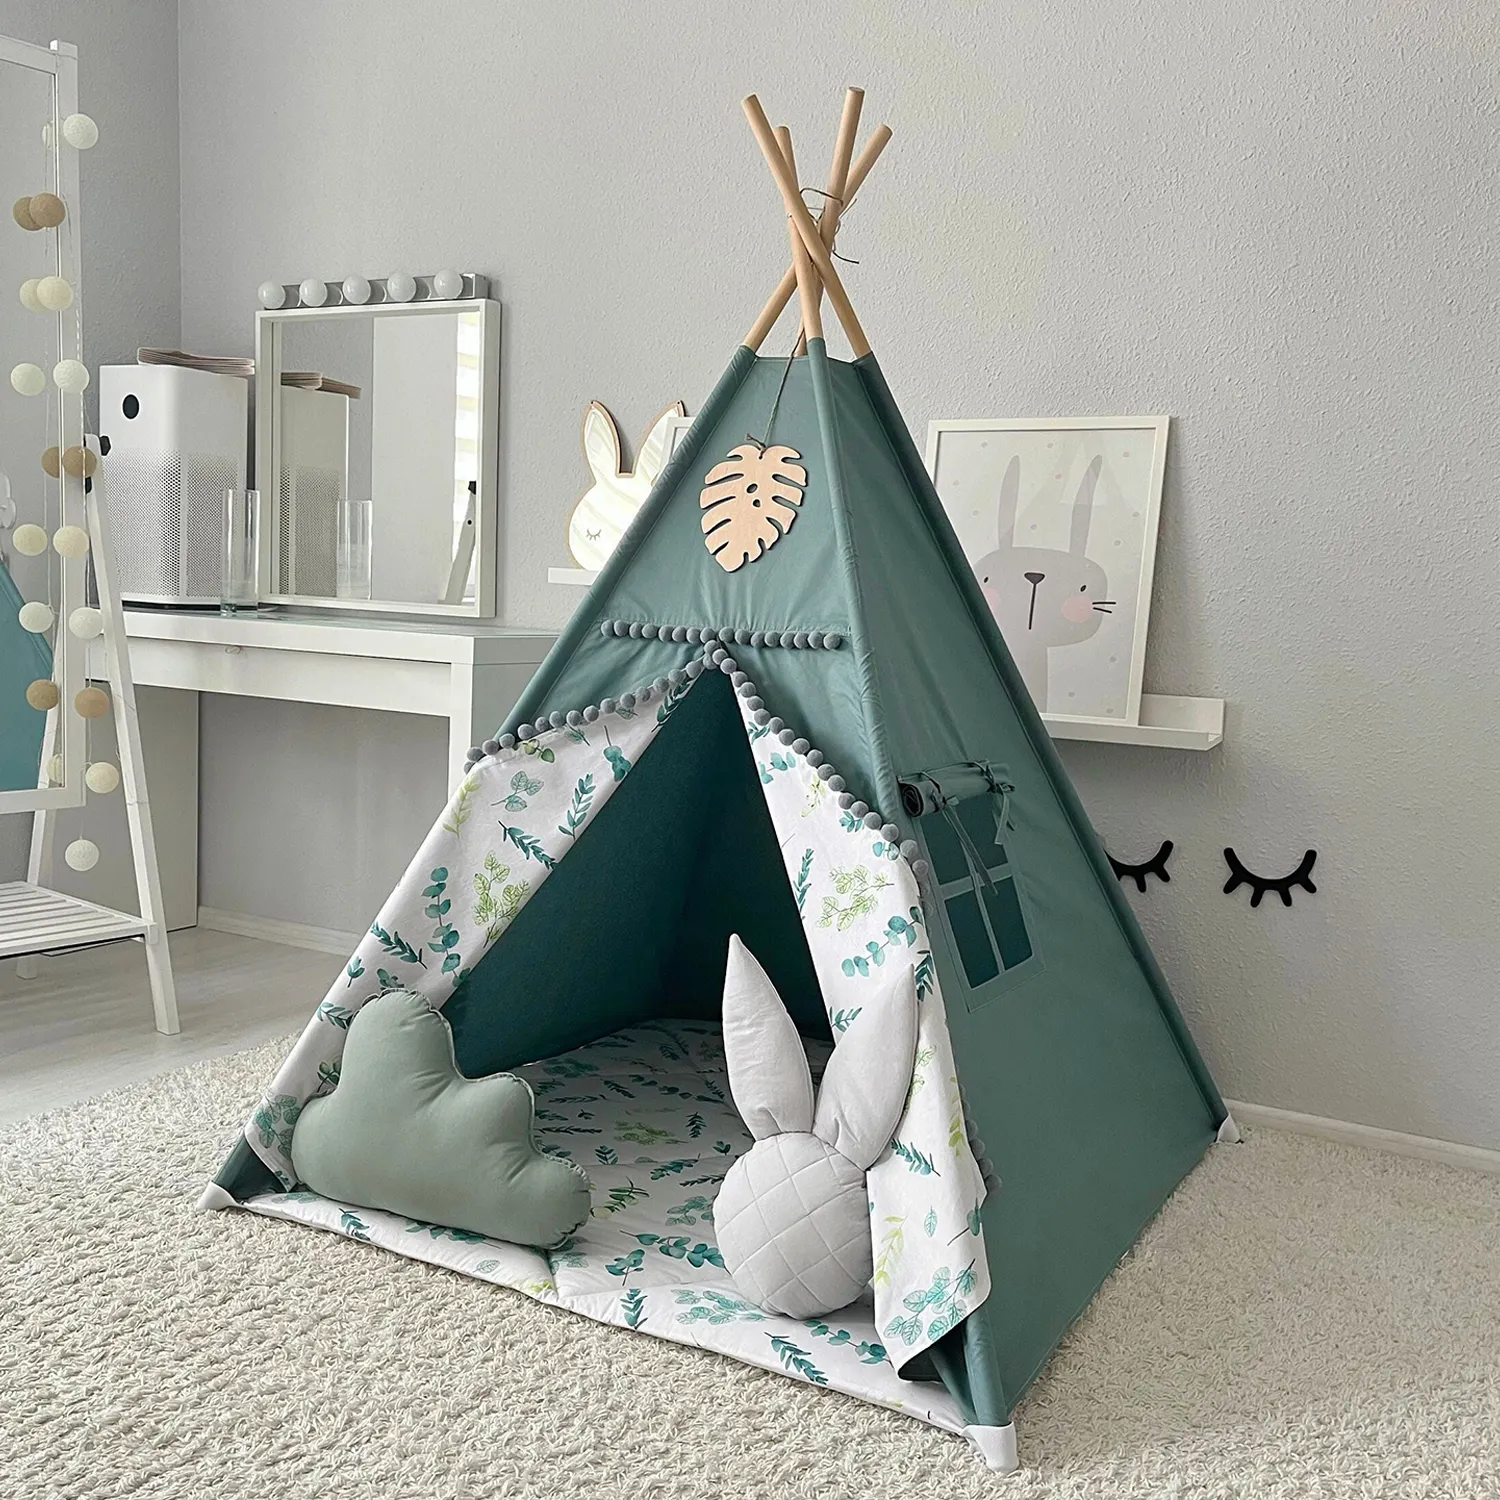 Indien Teepee neuer Stil Großhandel Luxusherstellung Camping Indoor Spielhaus für Kind